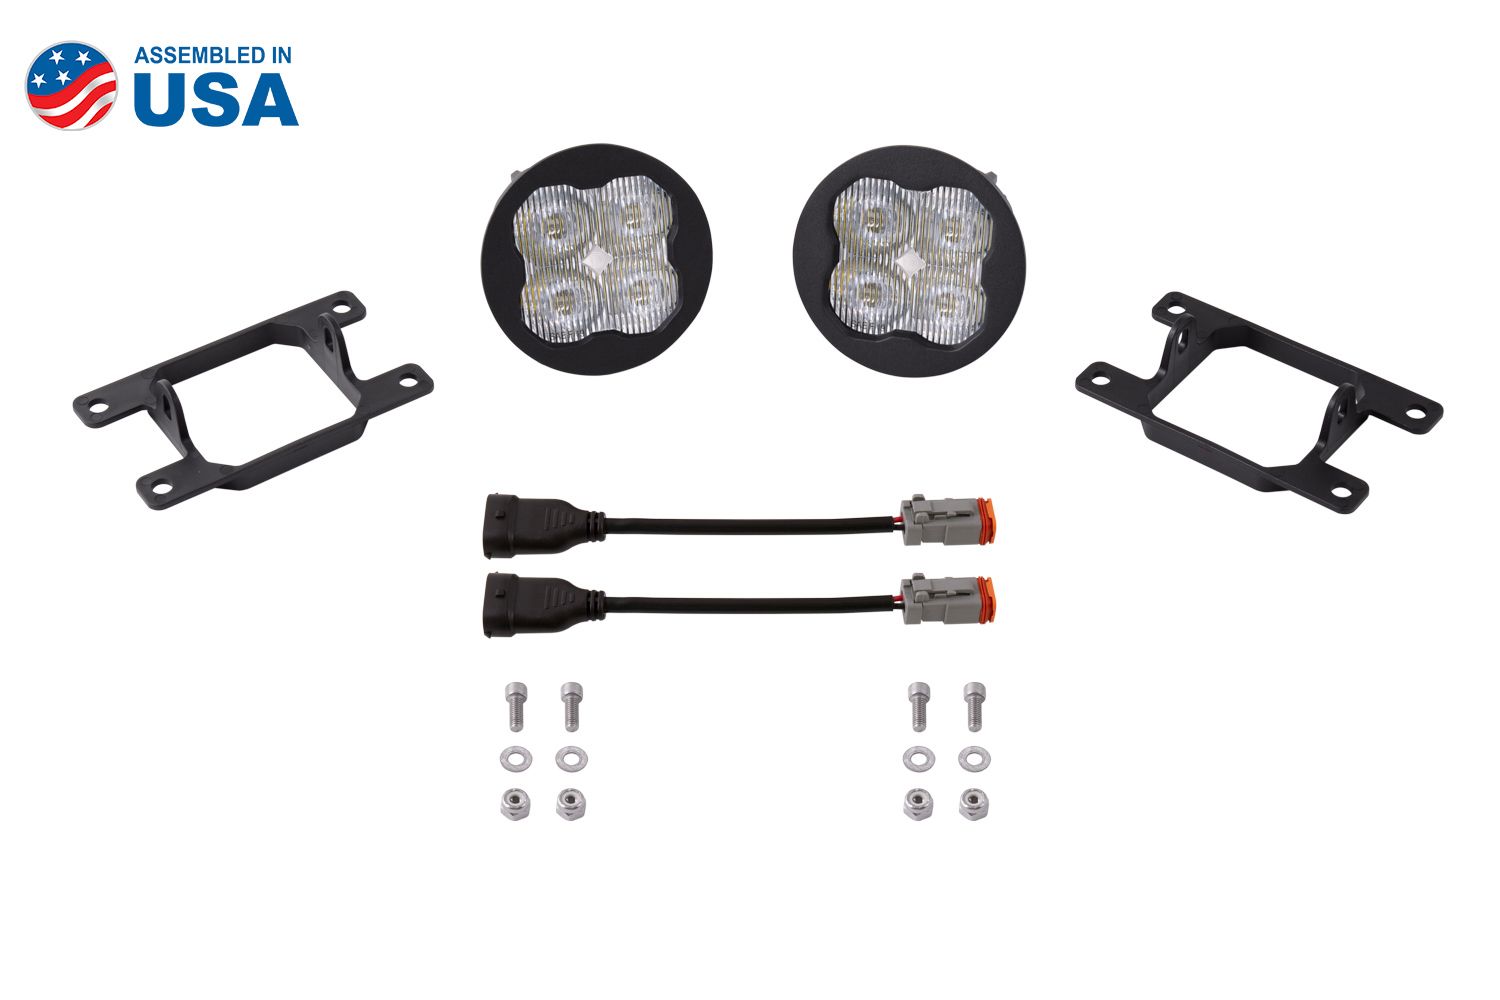 SS3 LED Fog Light Kit for 2013-2018 Acura RDX Diode Dynamics-